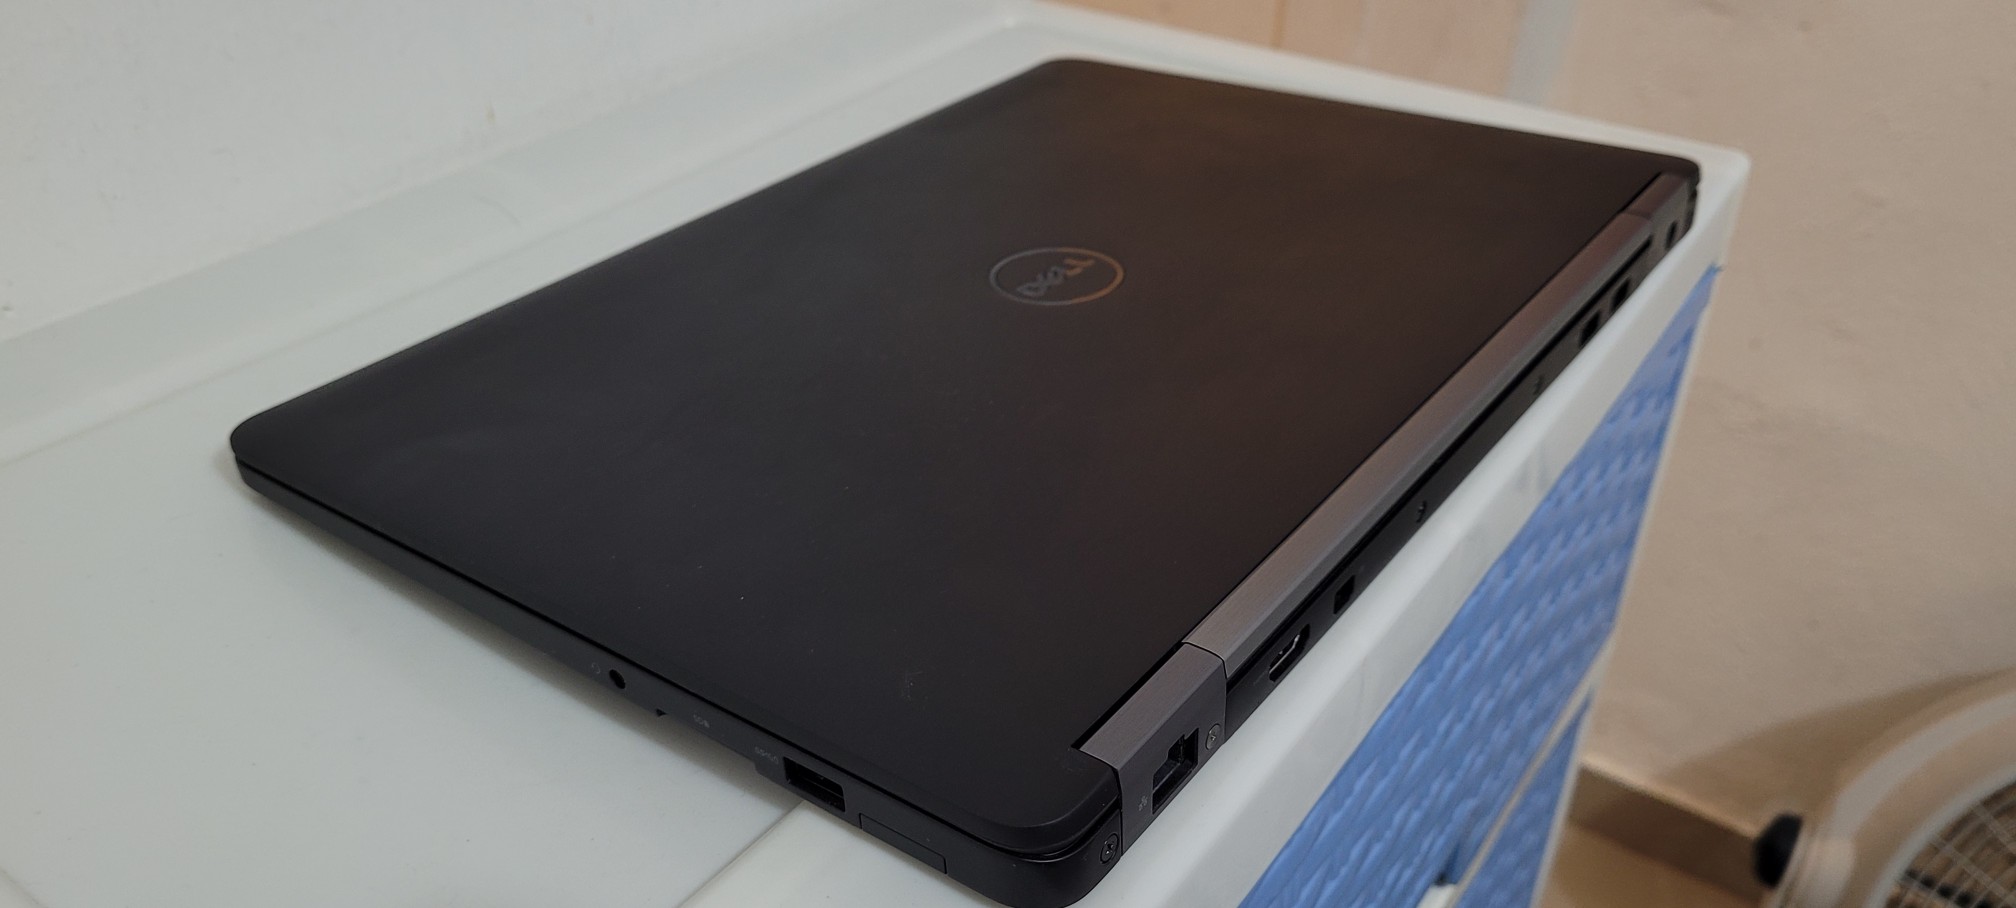 computadoras y laptops - Dell 7480 14 Pulg Core i5 7ma Gen Ram 8gb ddr4 Disco 128gb SSD Full 1080p 2